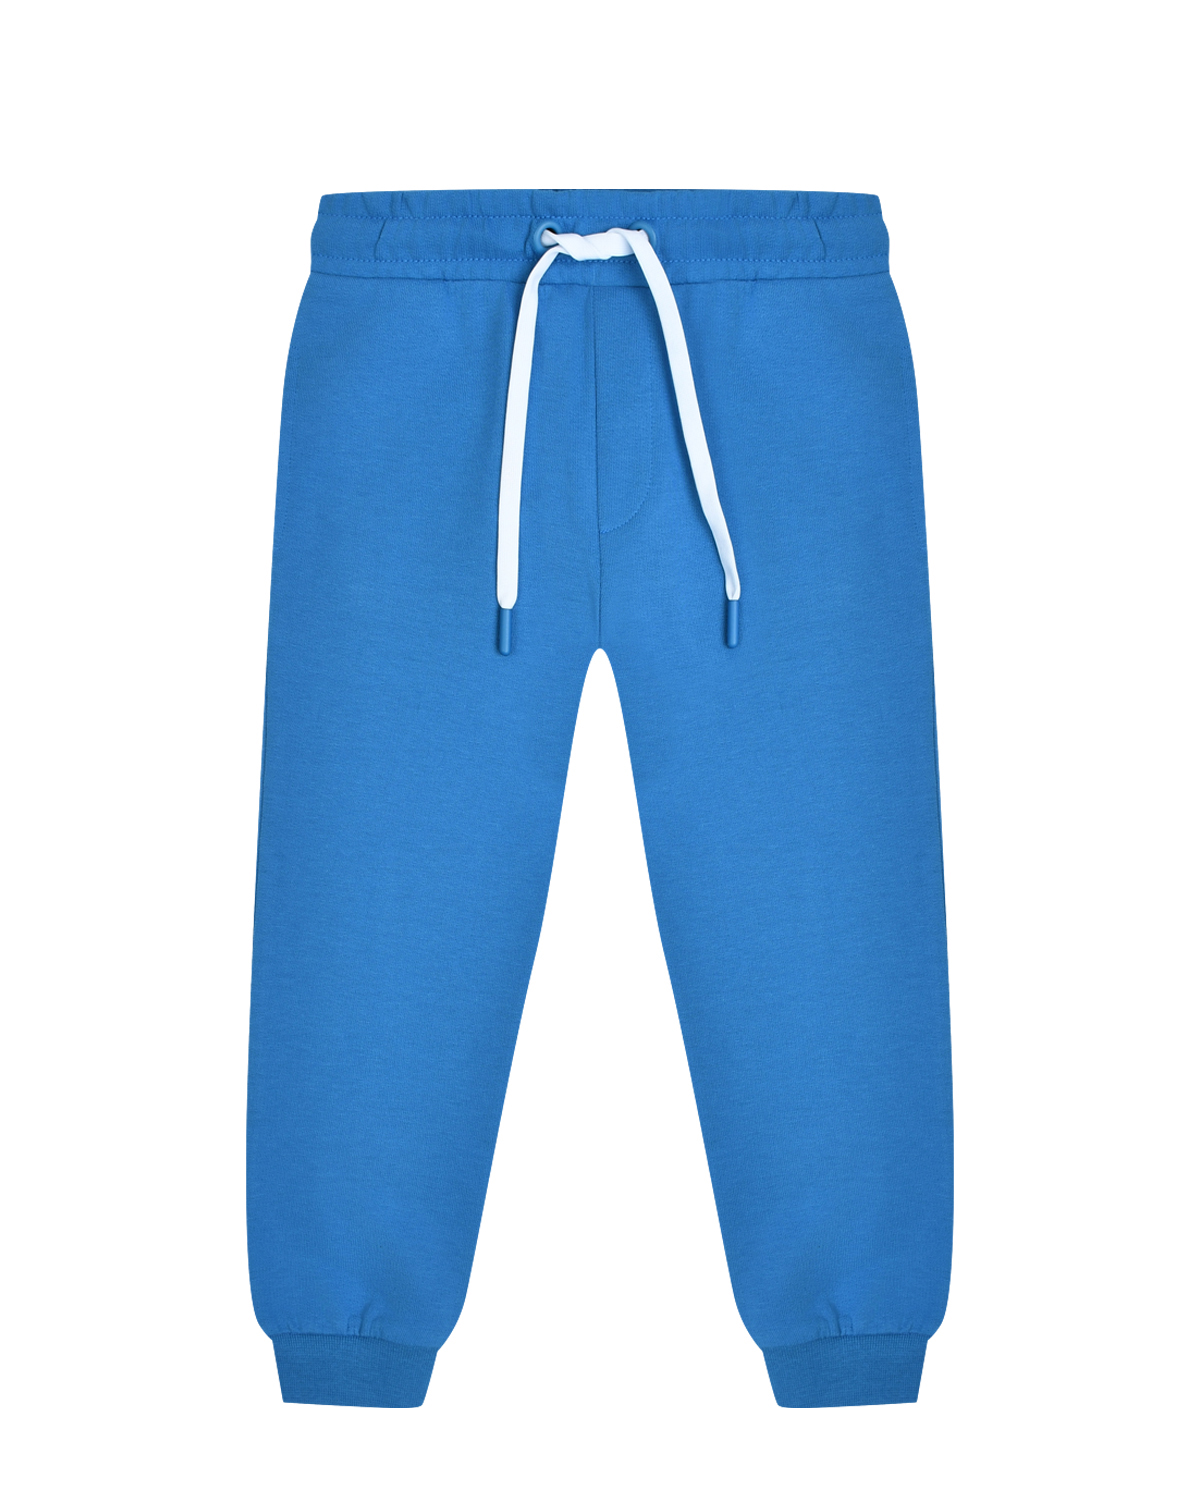 Спортивные брюки с поясом на кулиске, голубые Bikkembergs, размер 164, цвет нет цвета - фото 1